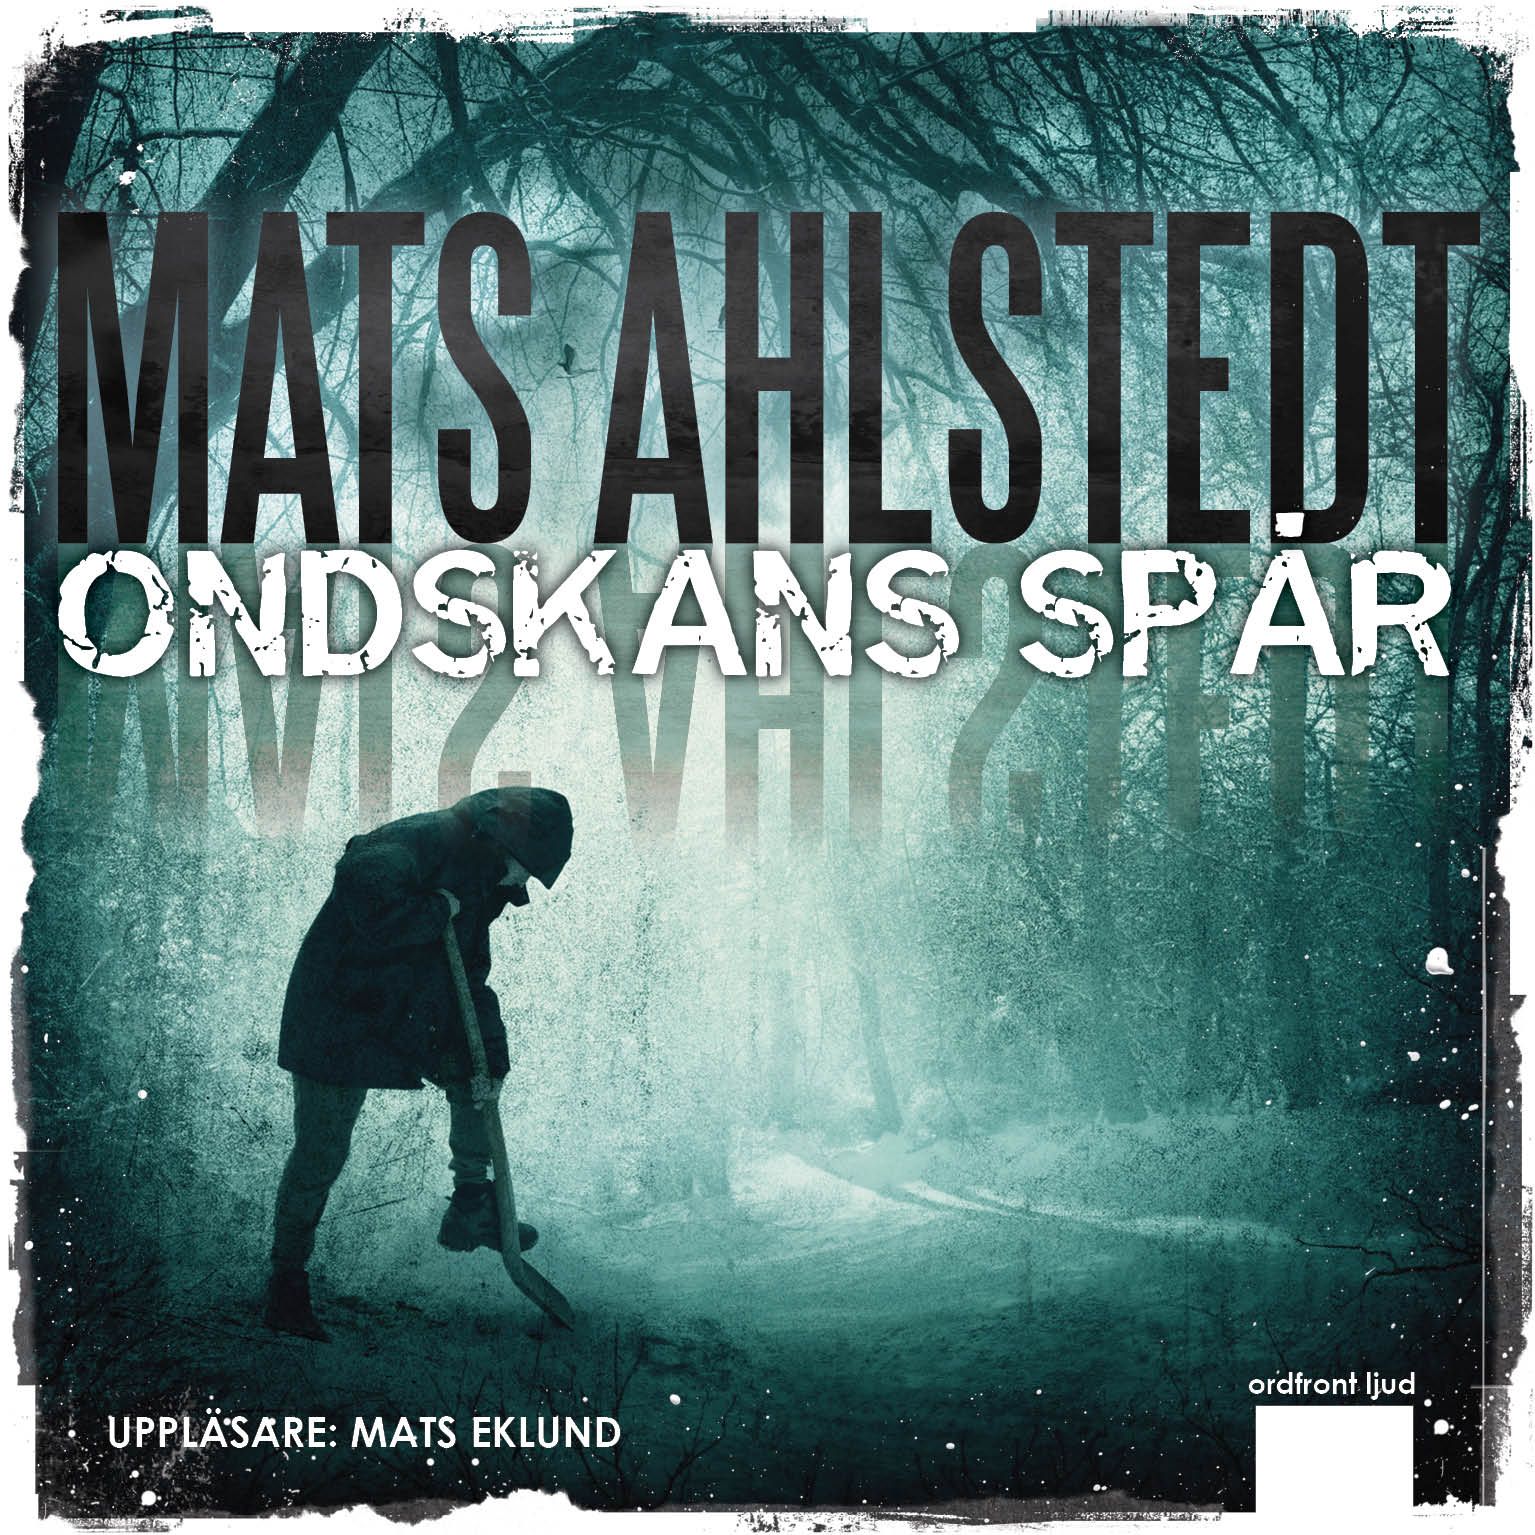 Ondskans spår, ljudbok av Mats Ahlstedt